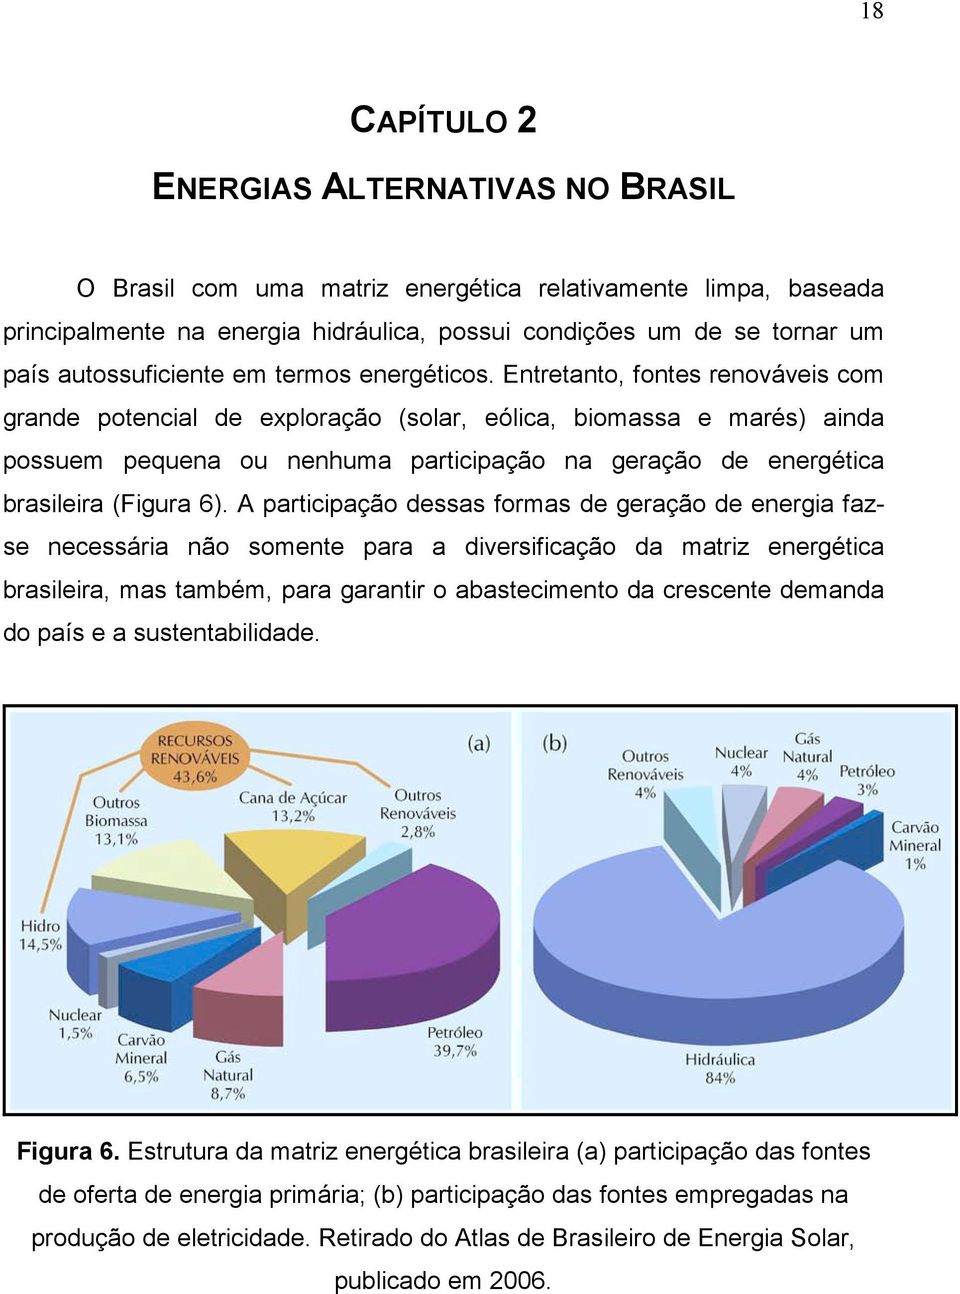 Entretanto, fontes renováveis com grande potencial de exploração (solar, eólica, biomassa e marés) ainda possuem pequena ou nenhuma participação na geração de energética brasileira (Figura 6).